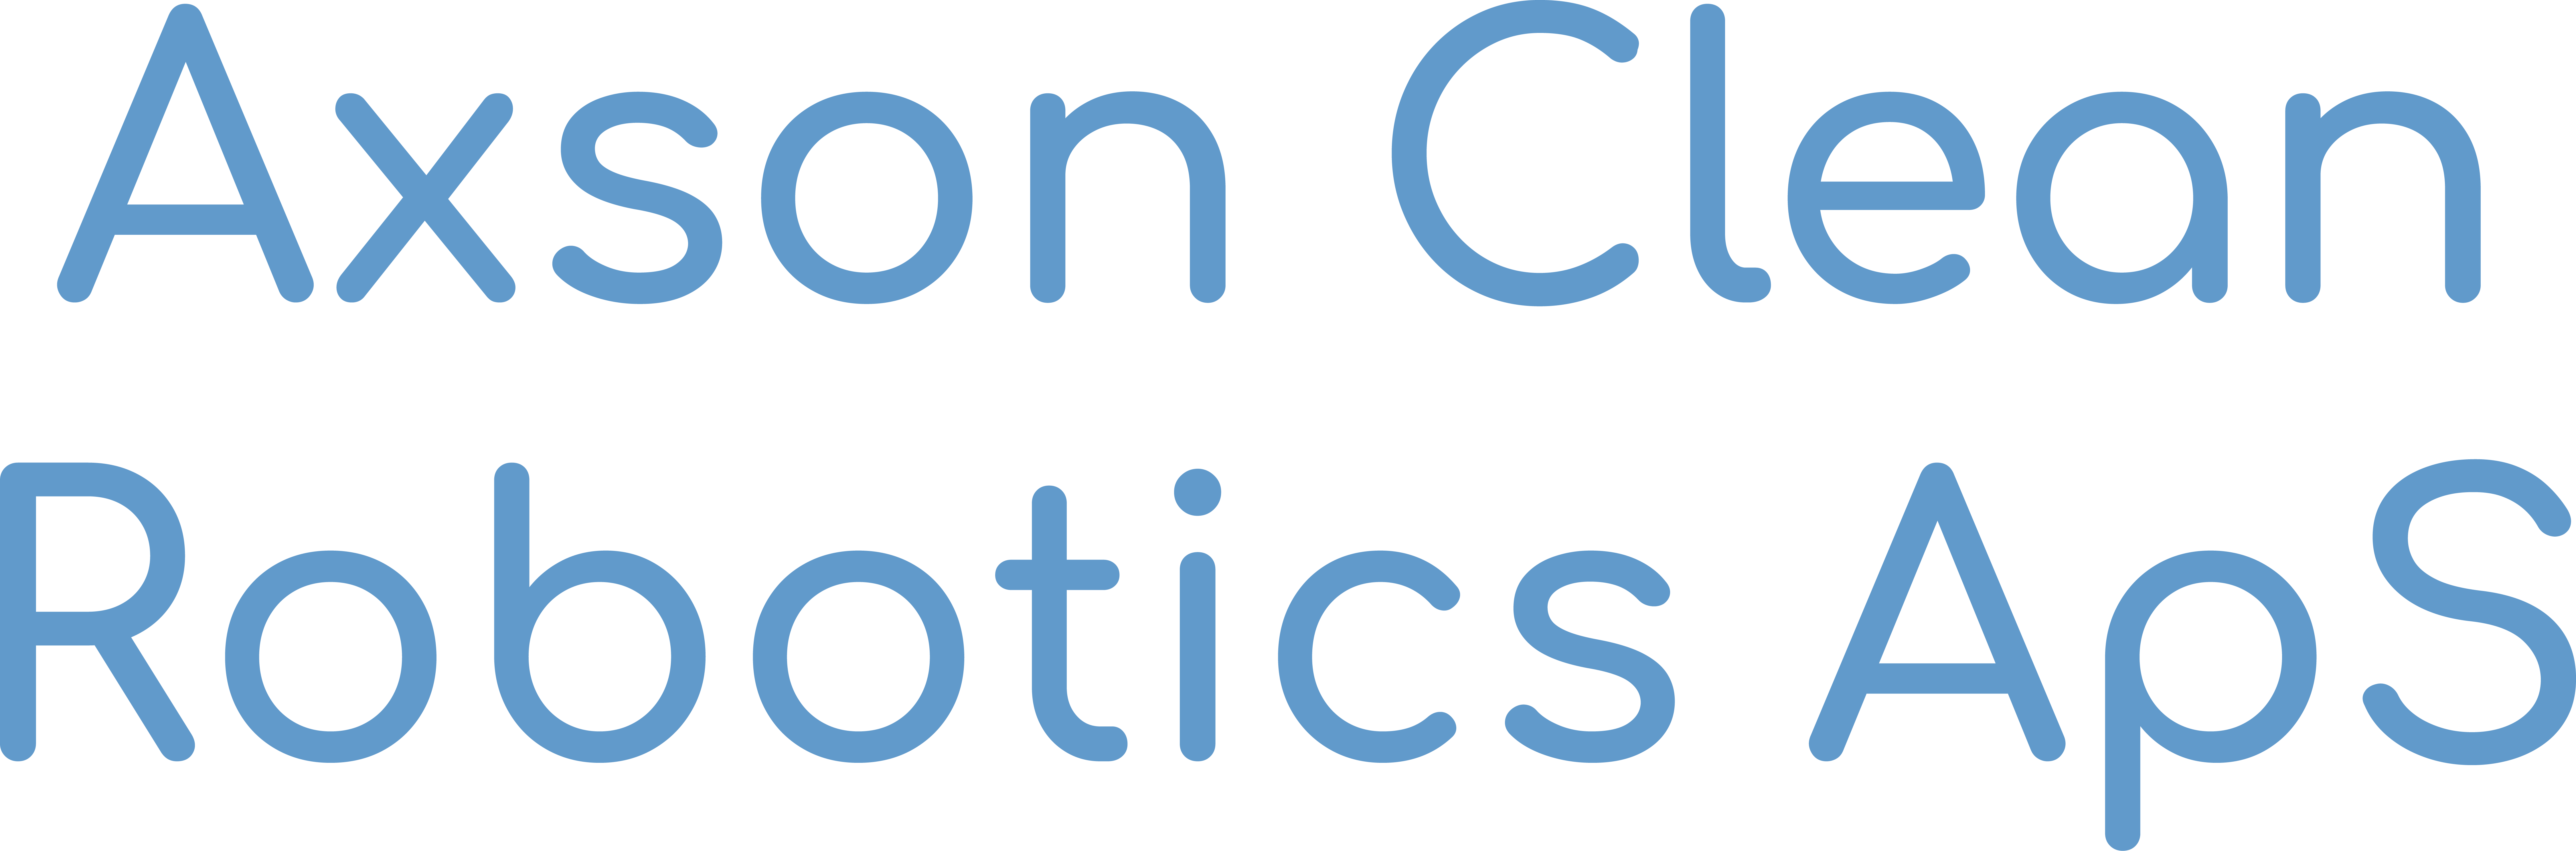 Udstiller Axson Clean Robotics ApS Rengøringsmessen Rent i Danmark